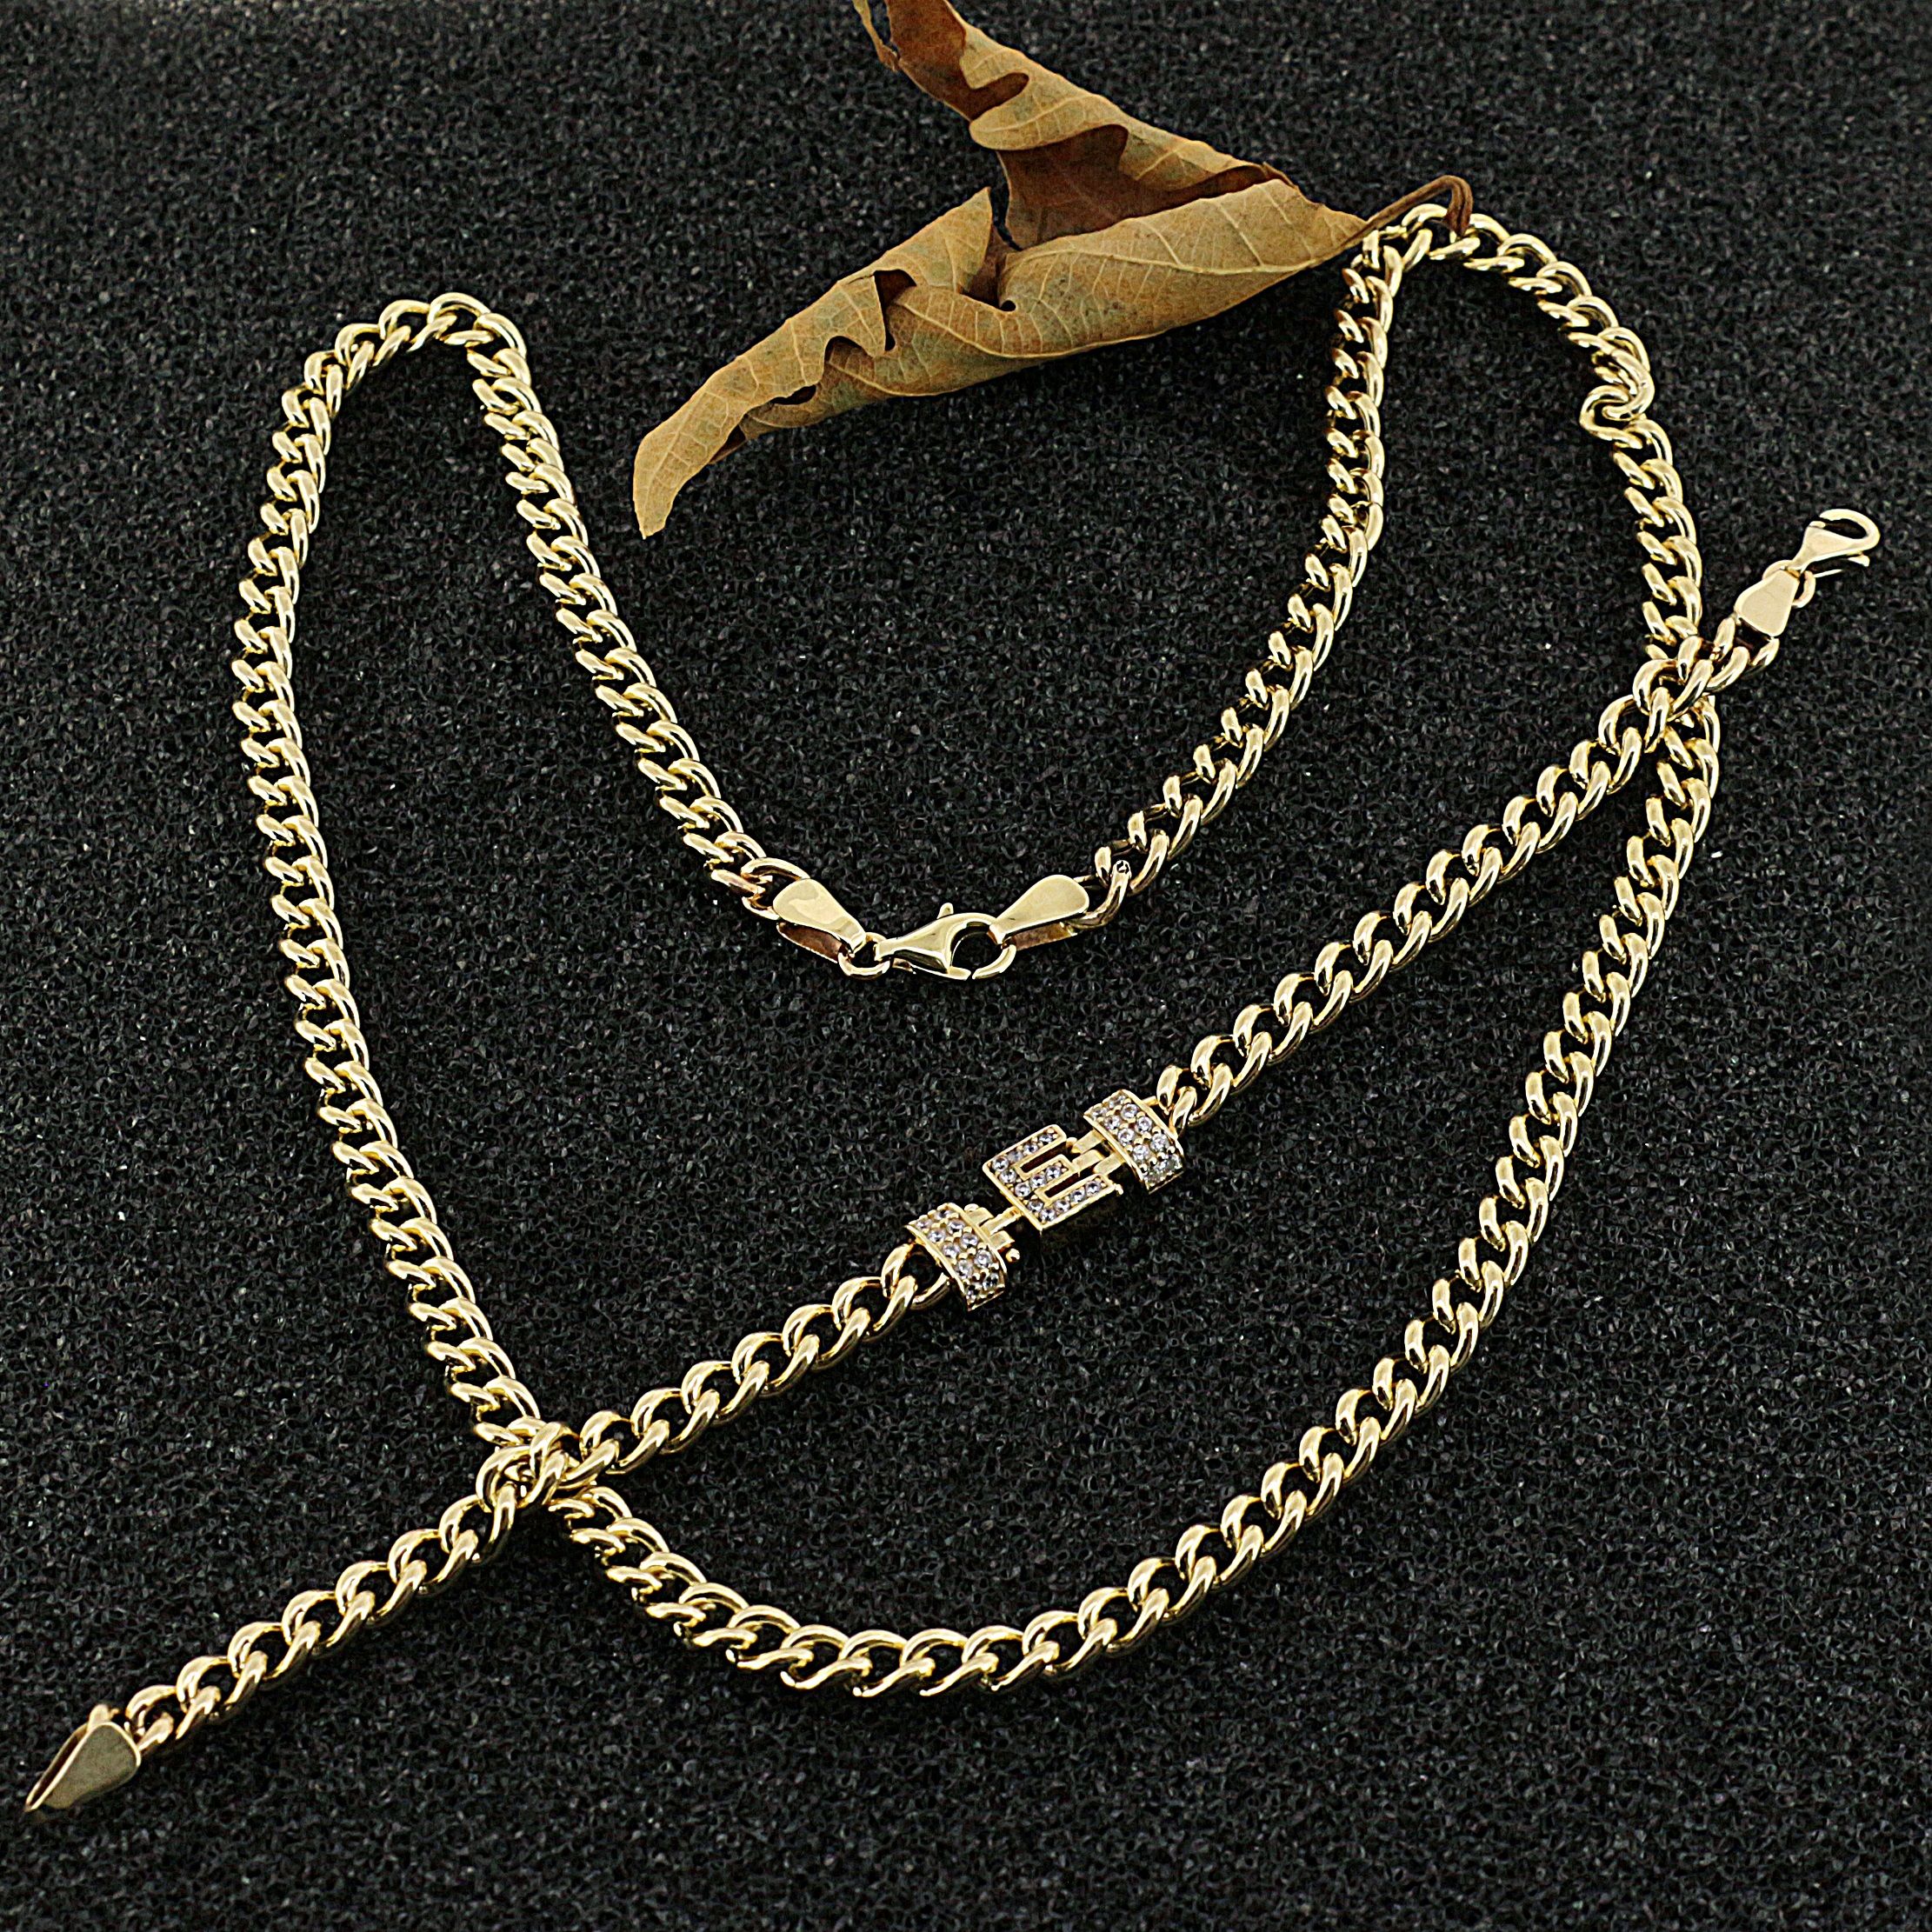 Gourmet Chain Necklace & Letter Bracelet Double Set